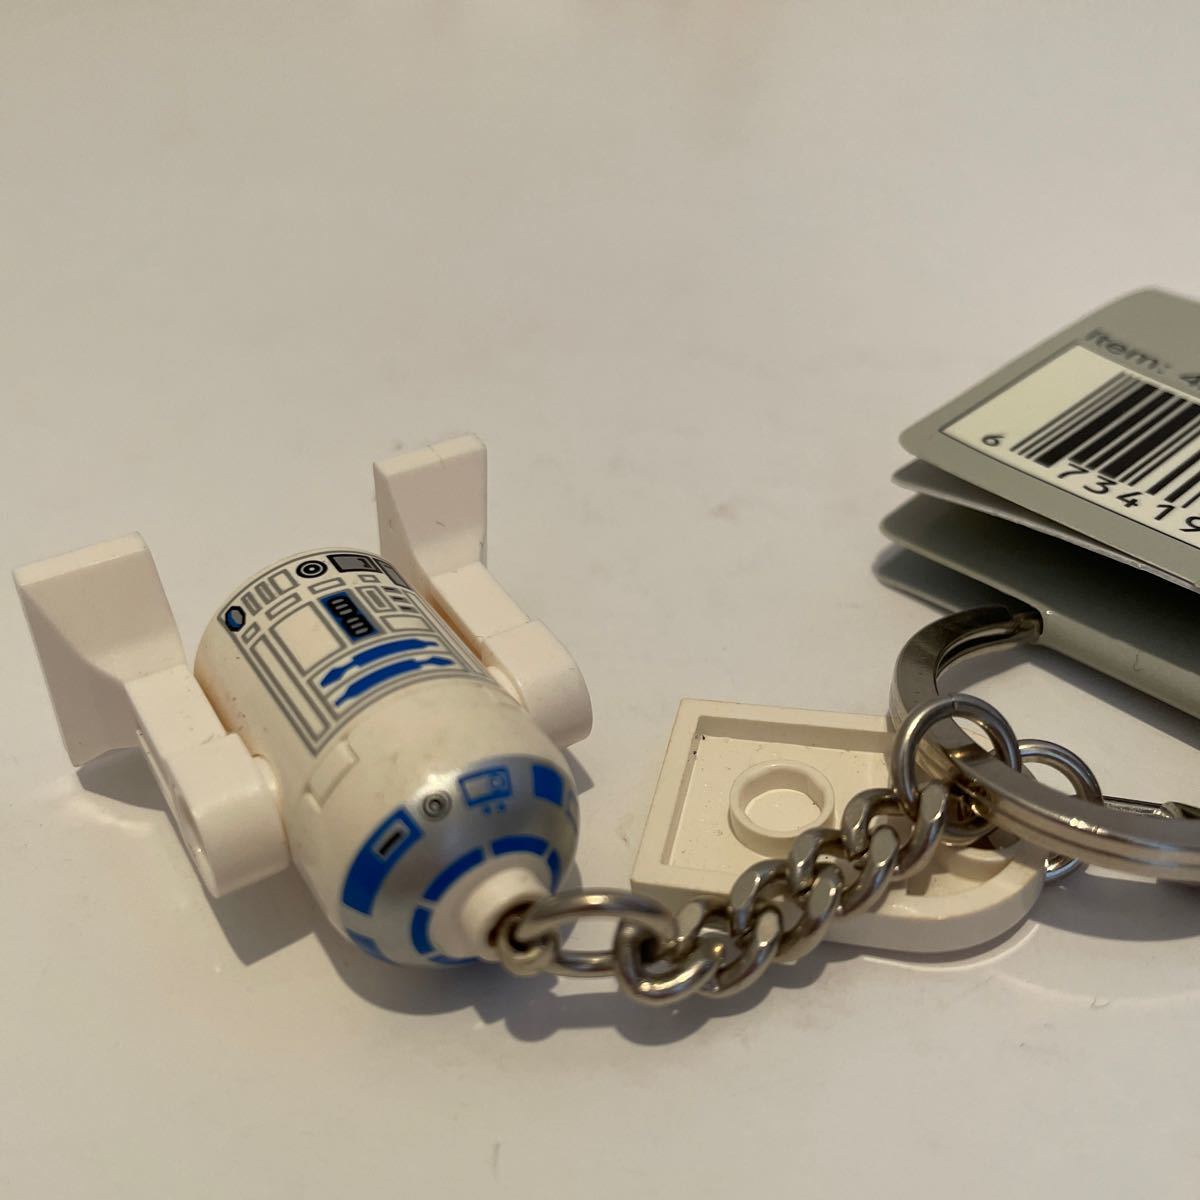  Звездные войны STAR WARS Lego LEGO брелок, держатель для ключа R2-D2 C-3PO